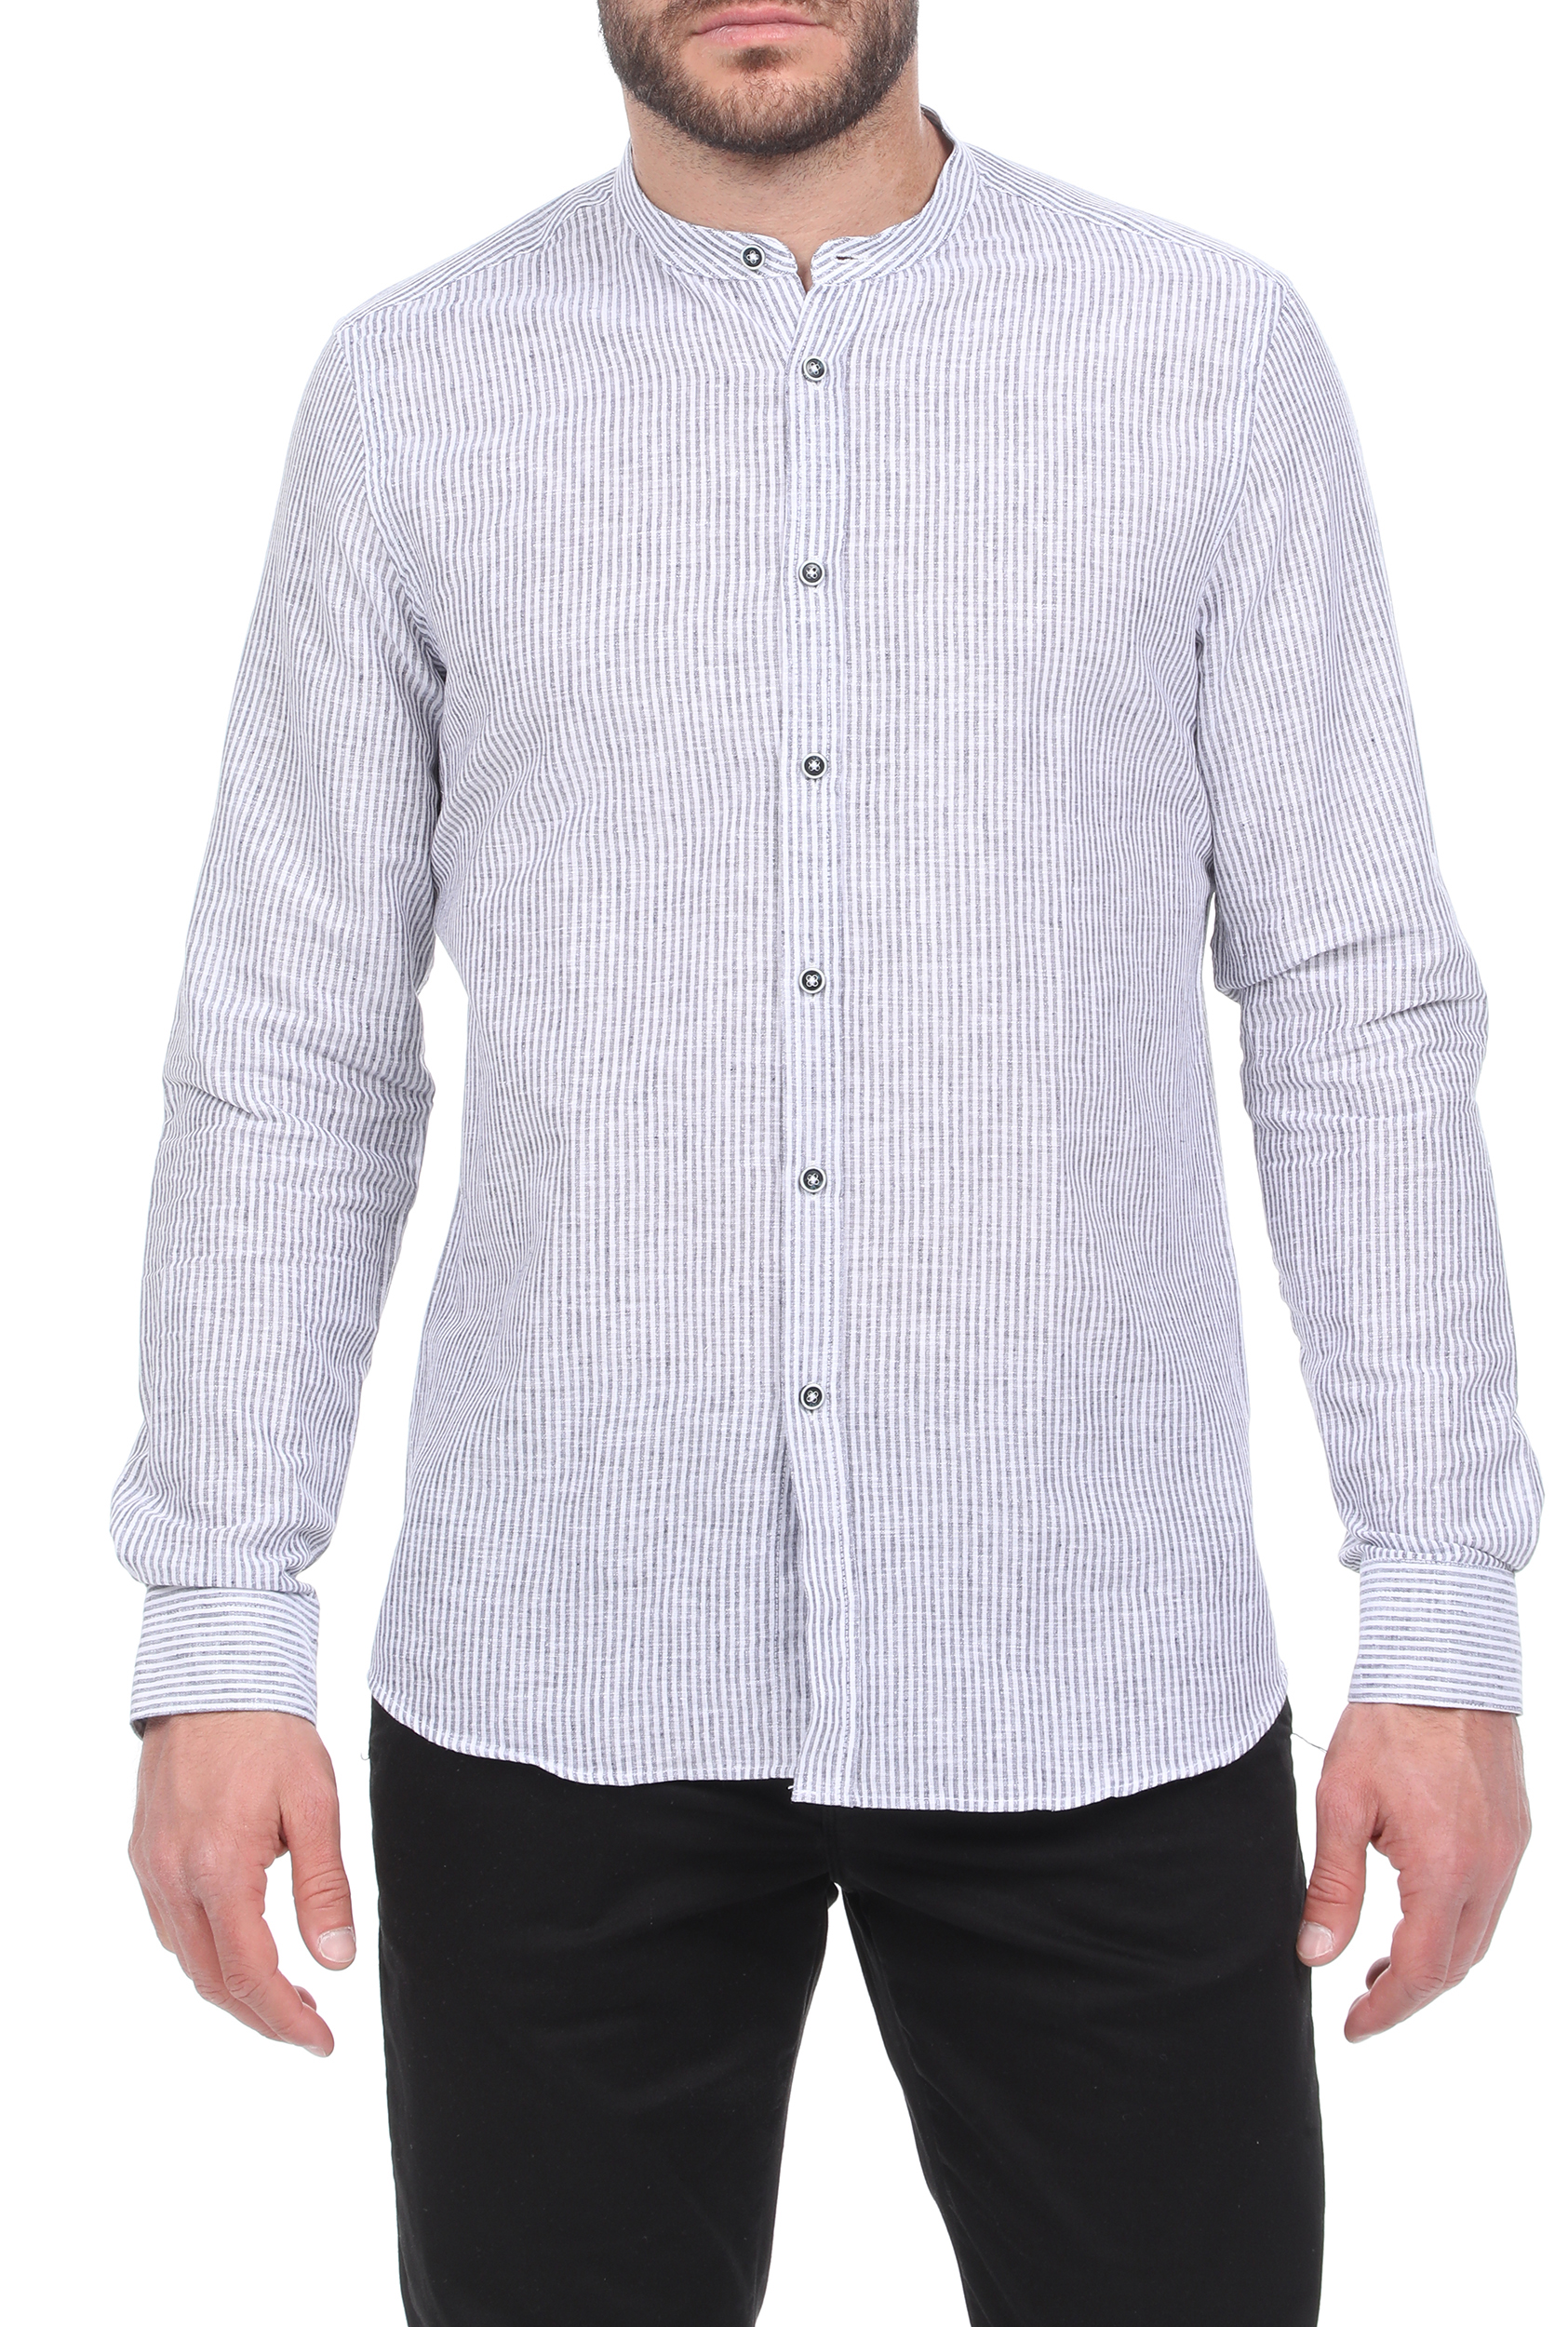 Ανδρικά/Ρούχα/Πουκάμισα/Μακρυμάνικα SSEINSE - Ανδρικό πουκάμισο SSEINSE COREANA λευκό μπλε